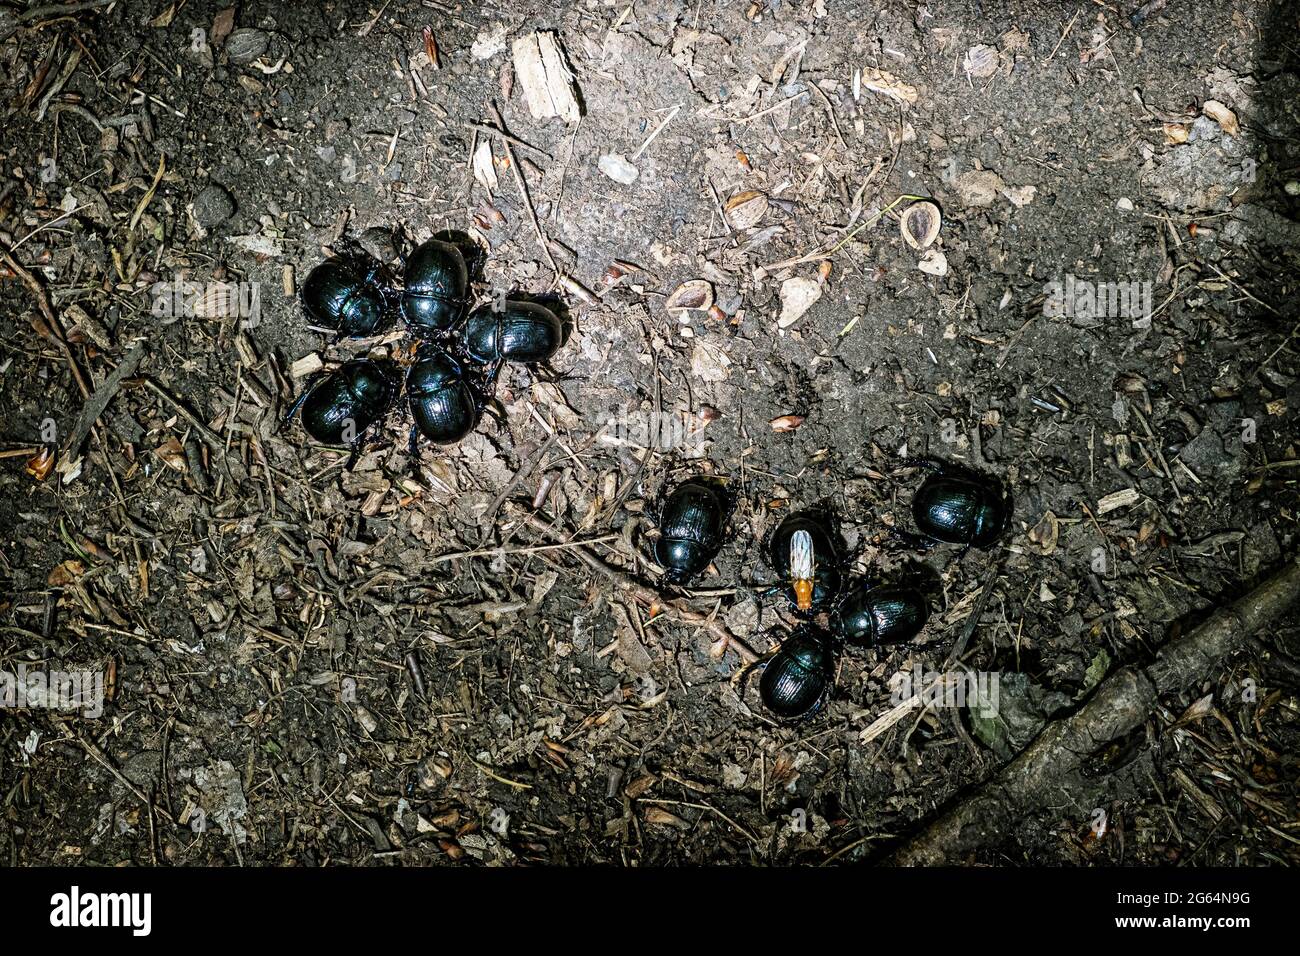 Gruppe von Skarabäus Käfer auf dem Boden. Schönheit in der Natur. Stockfoto